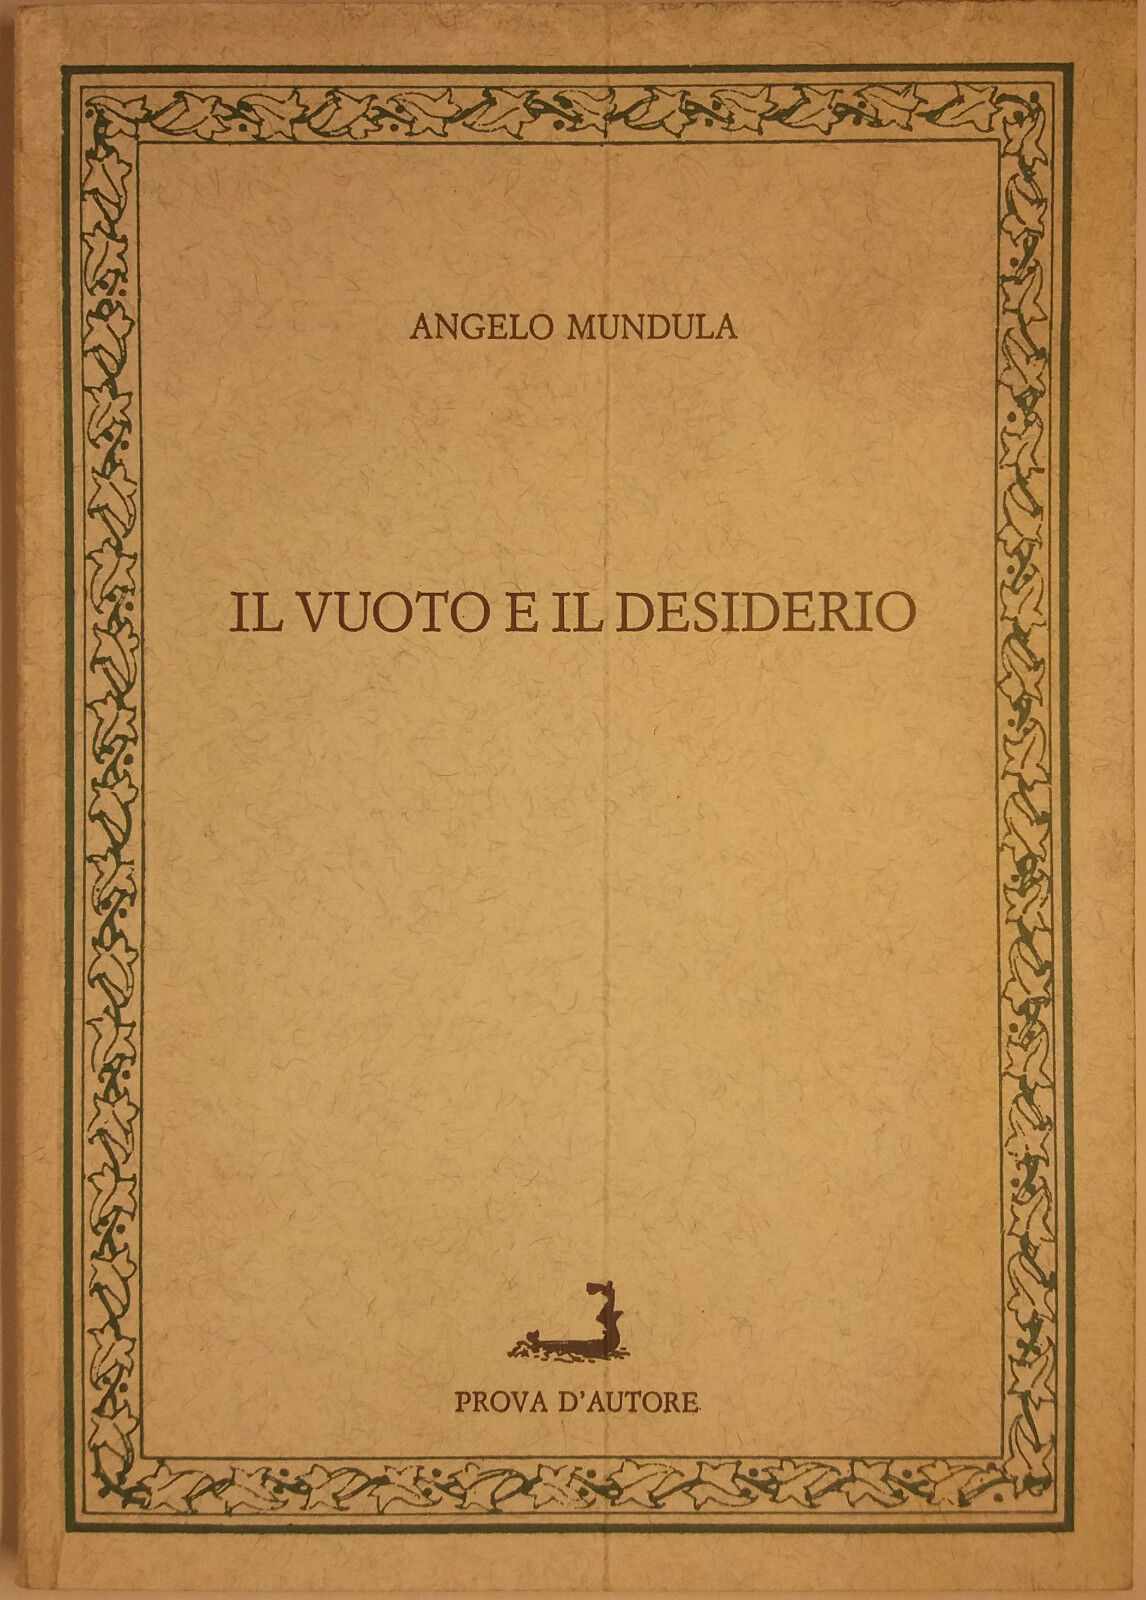 Il vuoto e il desiderio - Angelo Mundula - Prova d'autore - 1990 - G